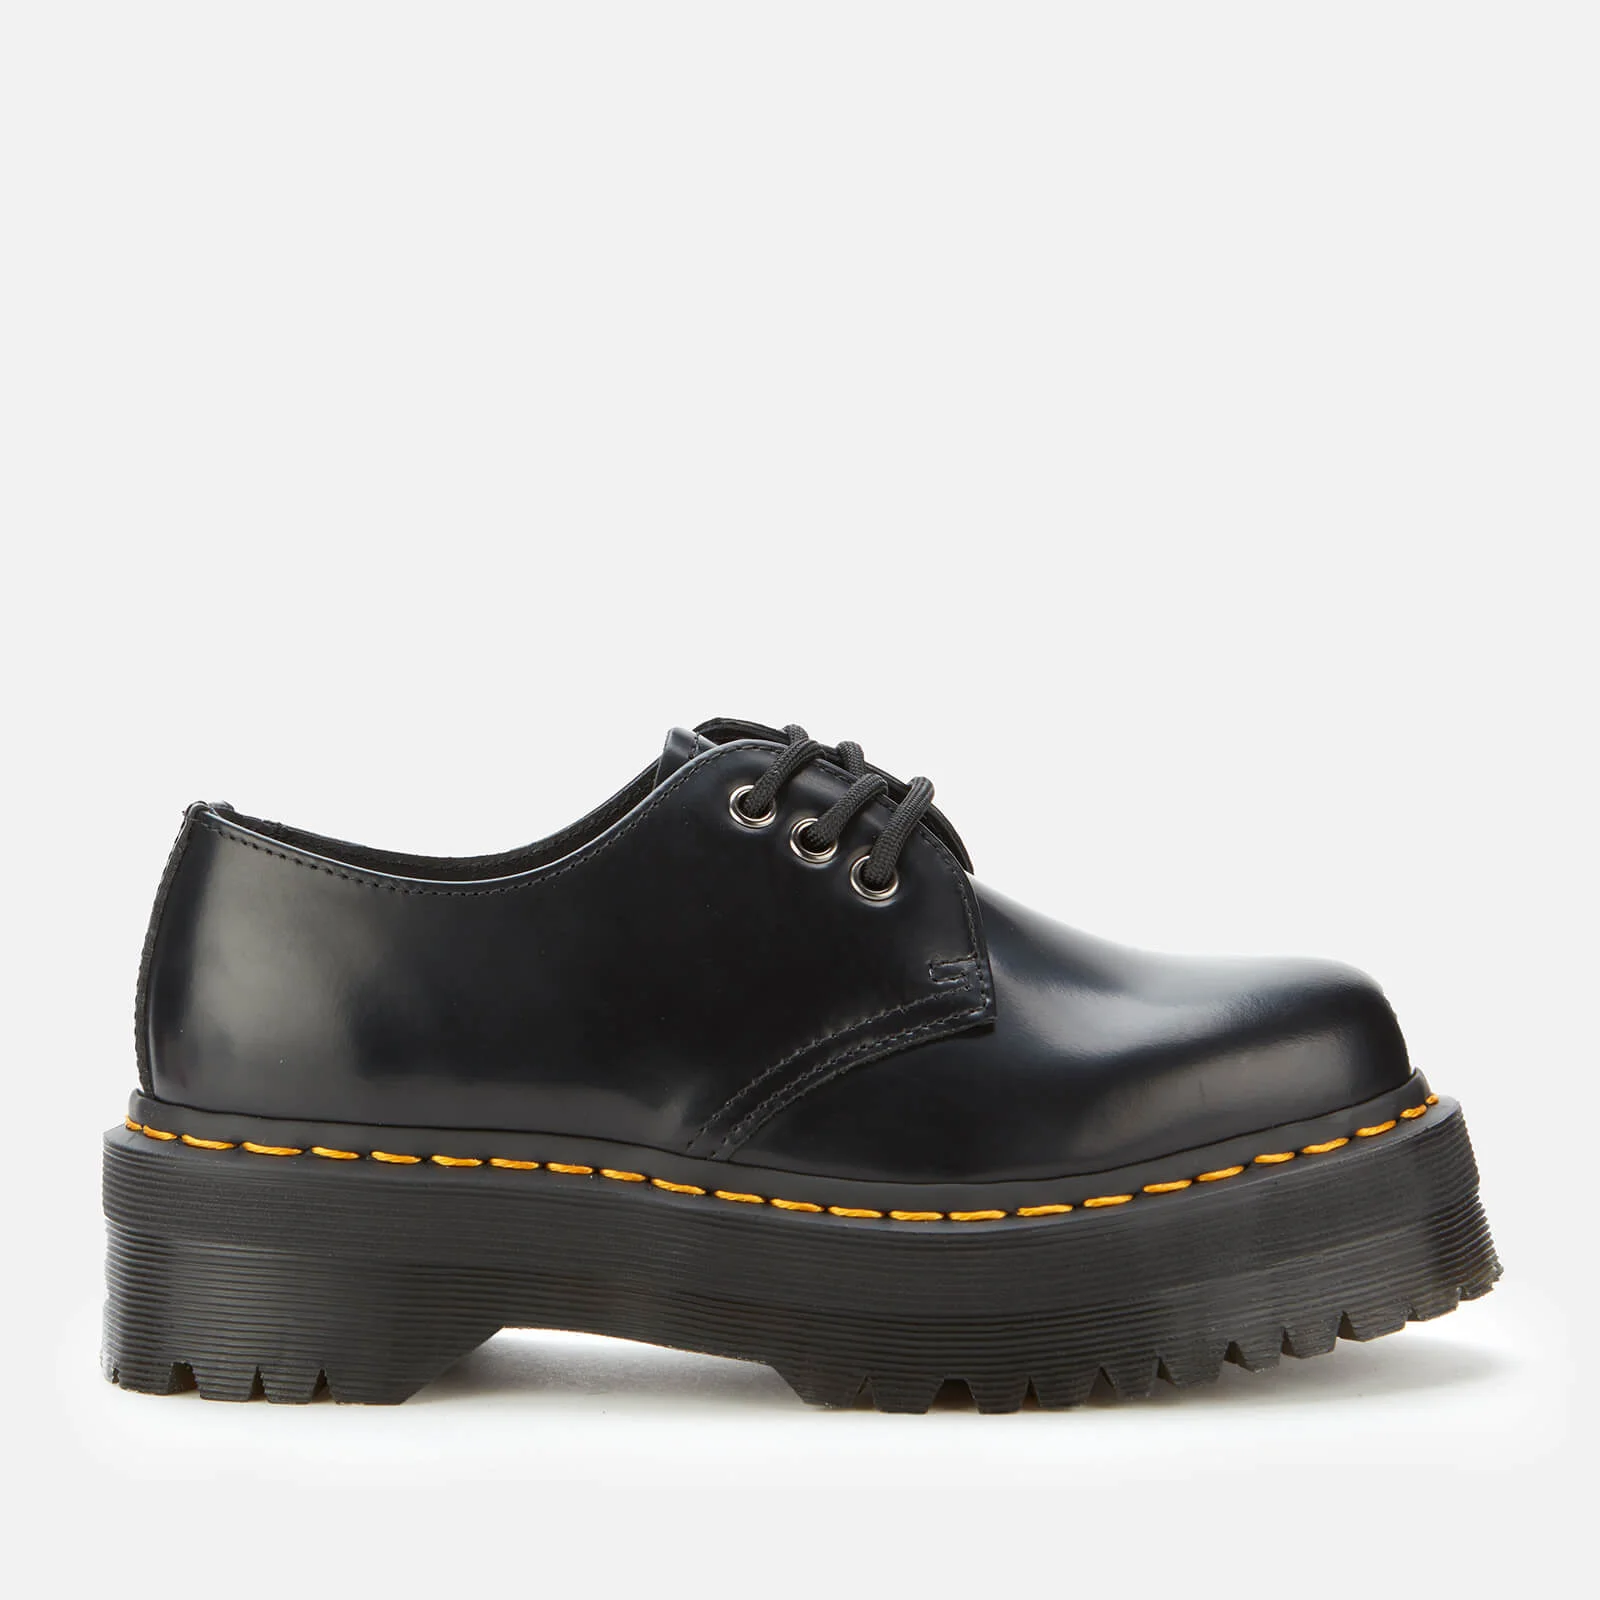 Dr. Martens 1461 Quad Leather 3-Eye Shoes - Black - UK 9 Image 1